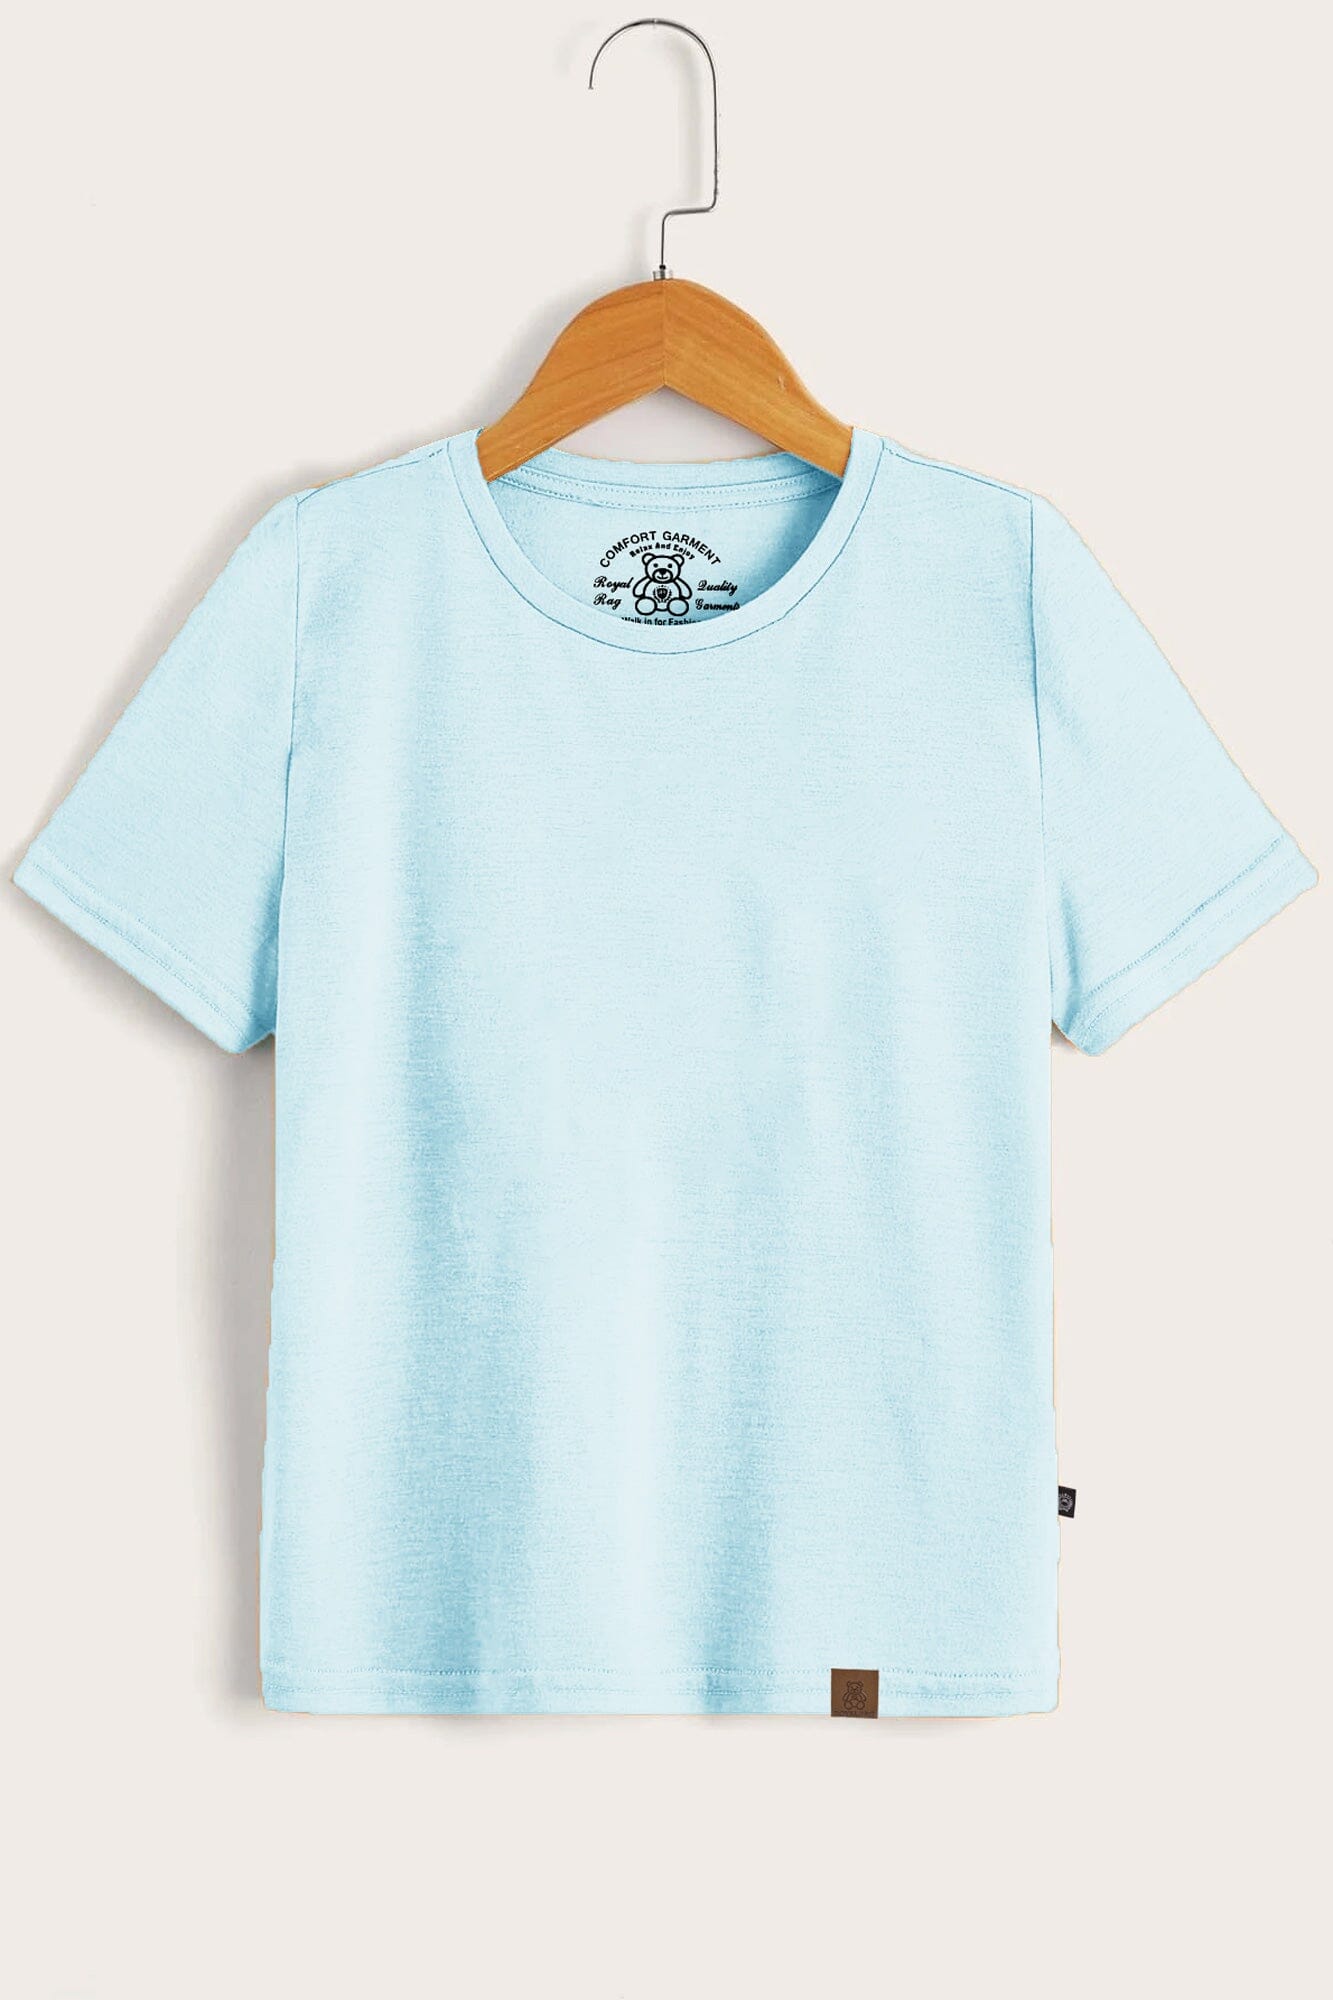 RR Comfort Kid's Solid Design Short Sleeve Tee Shirt Boy's Tee Shirt Usman Traders Sky 2-3 Years 